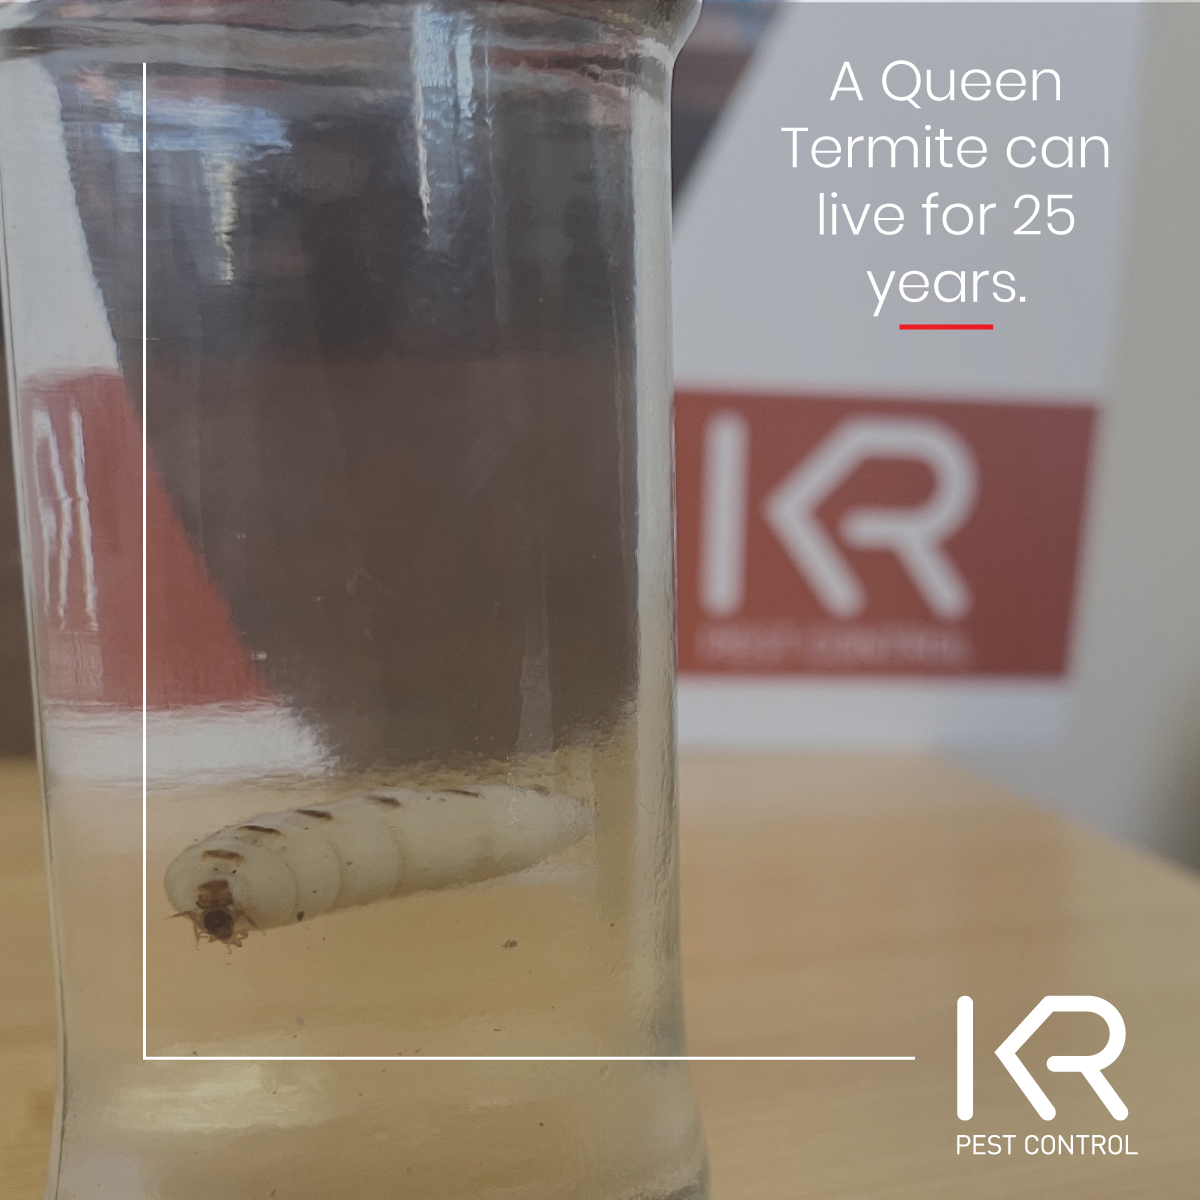 Queen_termite_KR